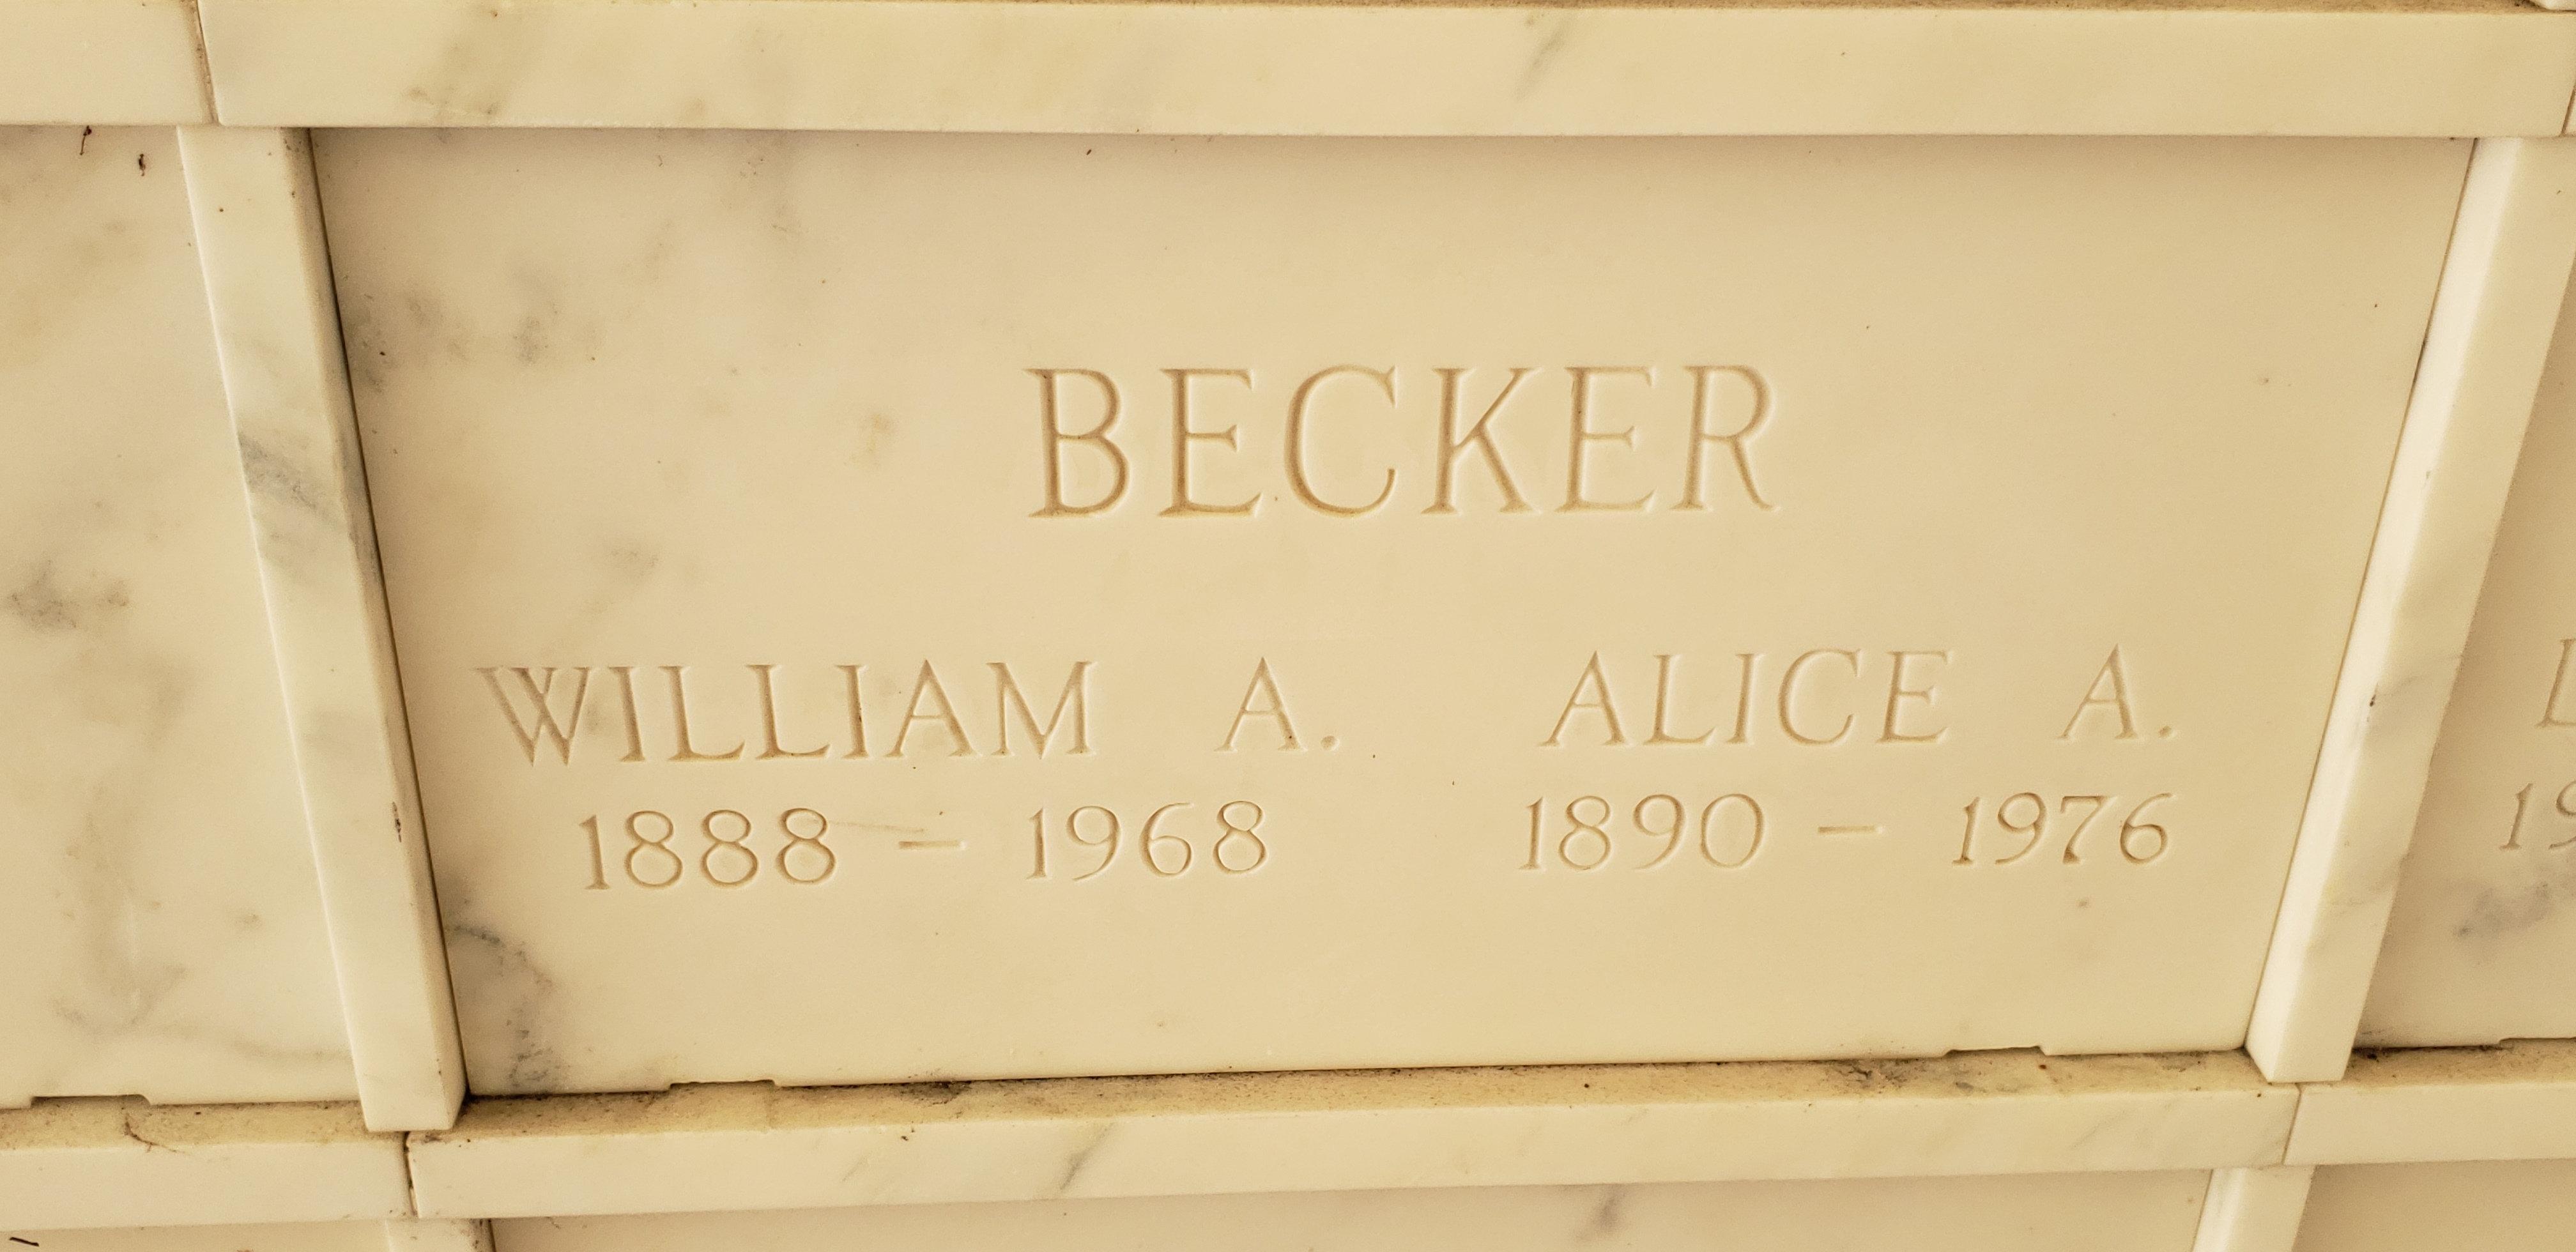 William A Becker